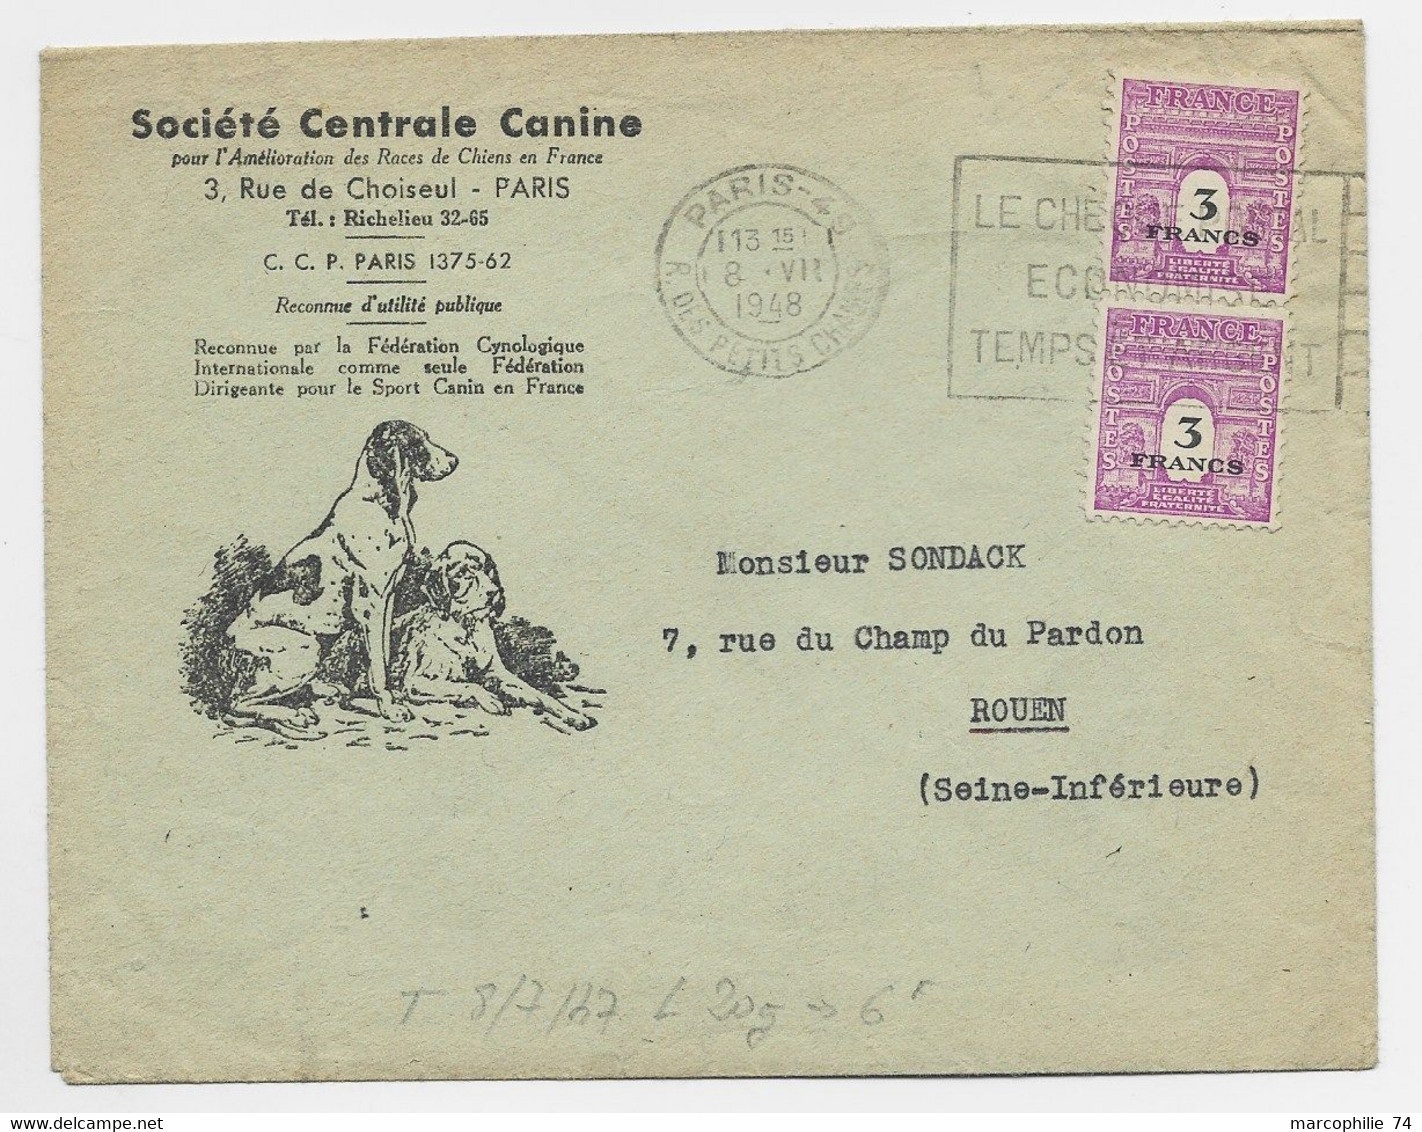 ARC TRIOMPHE 3FR PAIRE LETTRE ENTETE SOCIETE CENTRALE CANINE PARIS 8.VII .1948 AU TARIF - 1944-45 Triomfboog